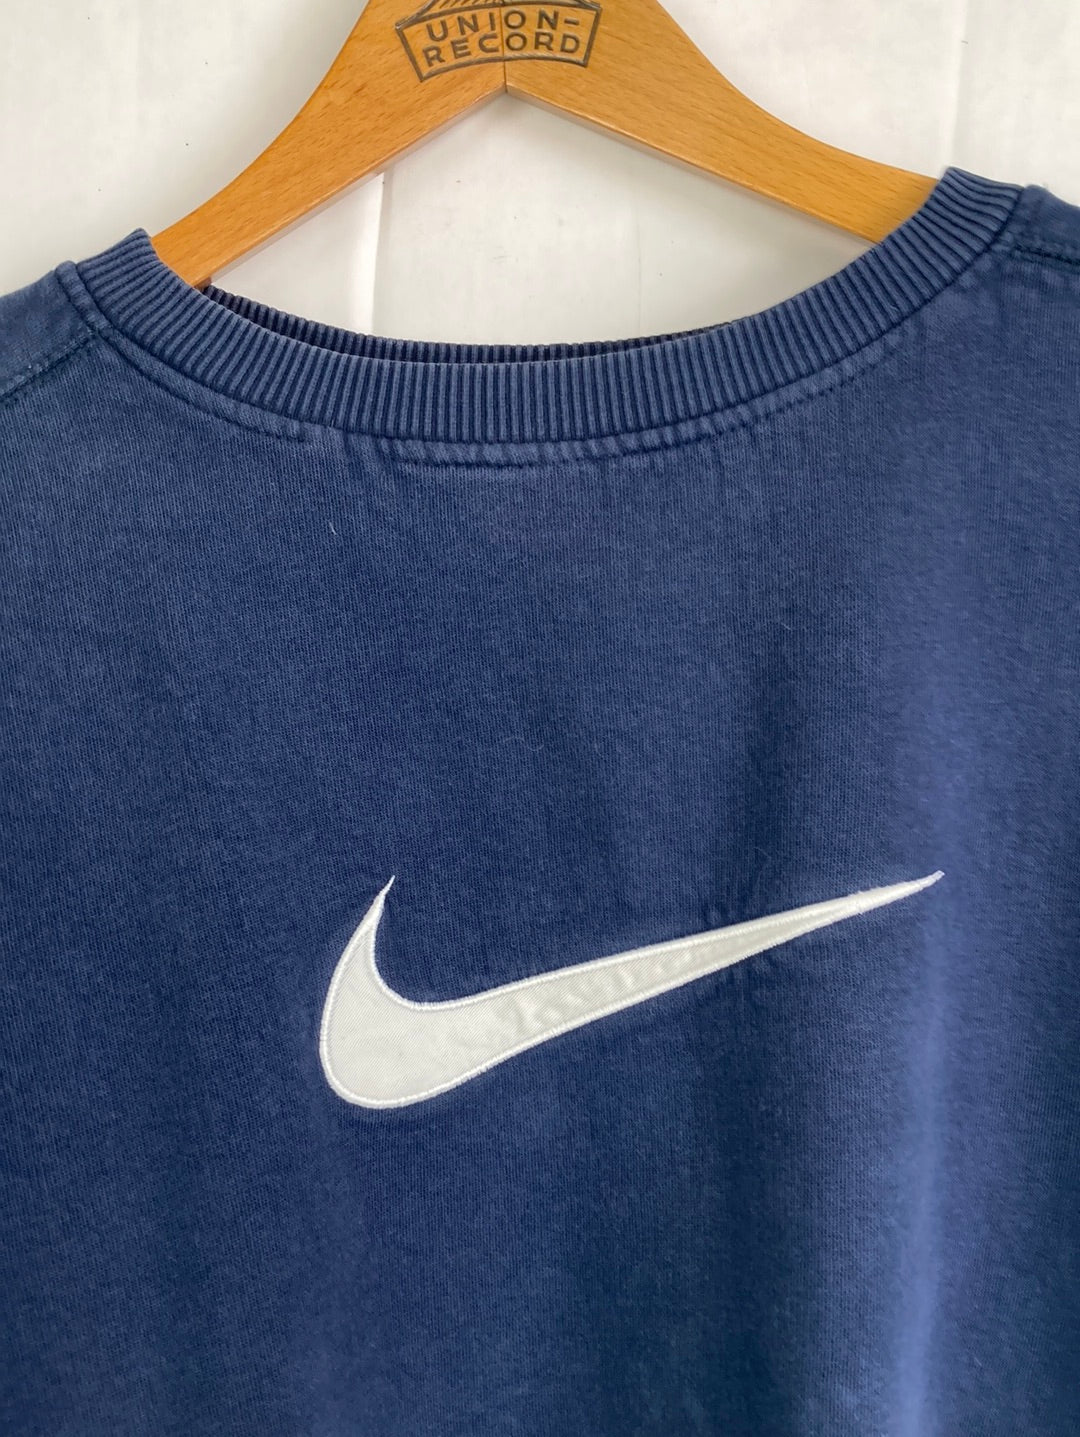 Nike Sweater (M)